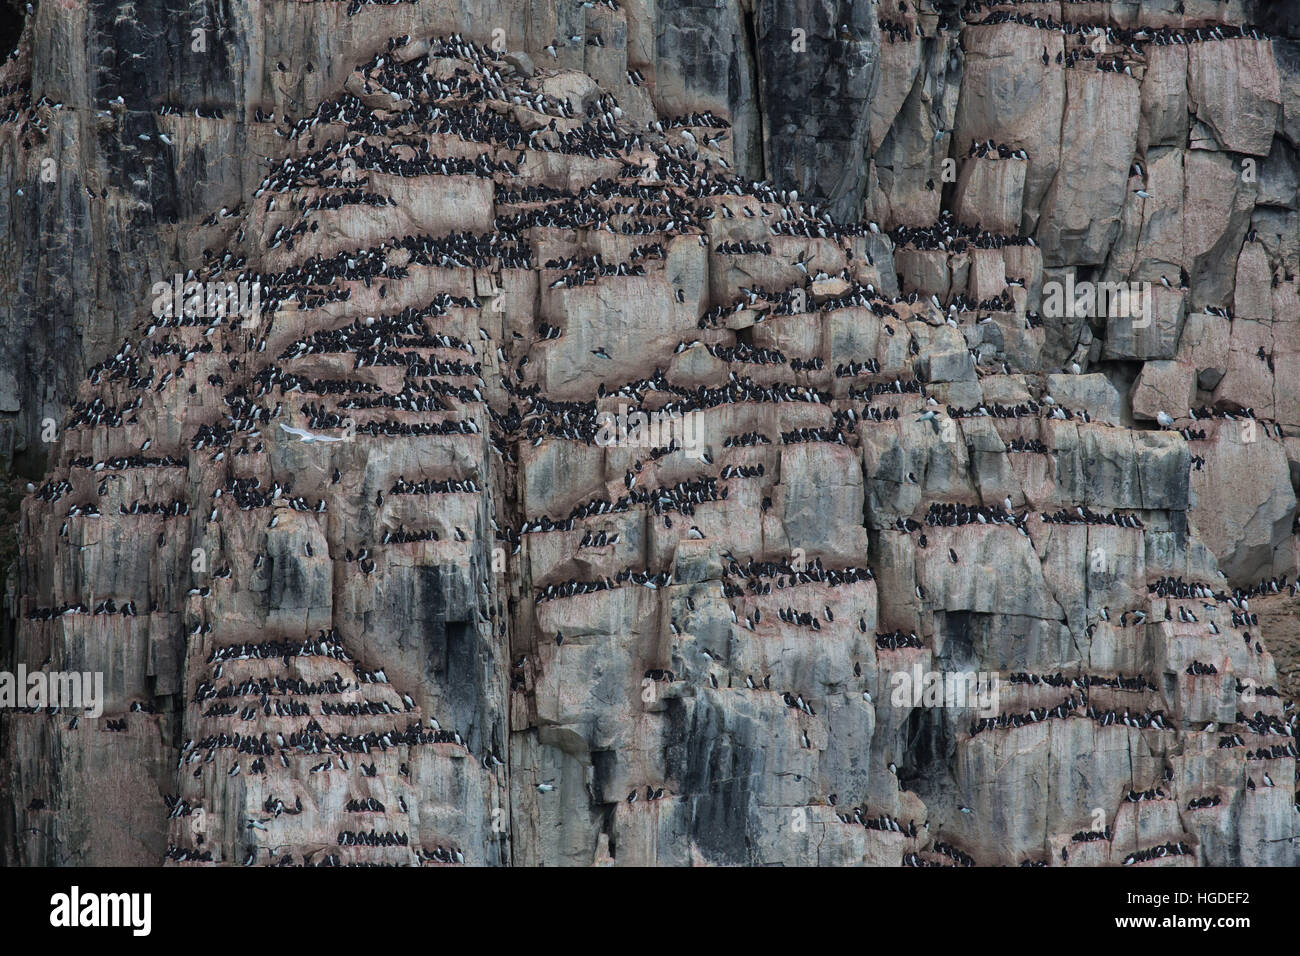 Spitsbergen, Svalbard, thick-billed murre, uria lomvia, bird's rock, birds, Stock Photo